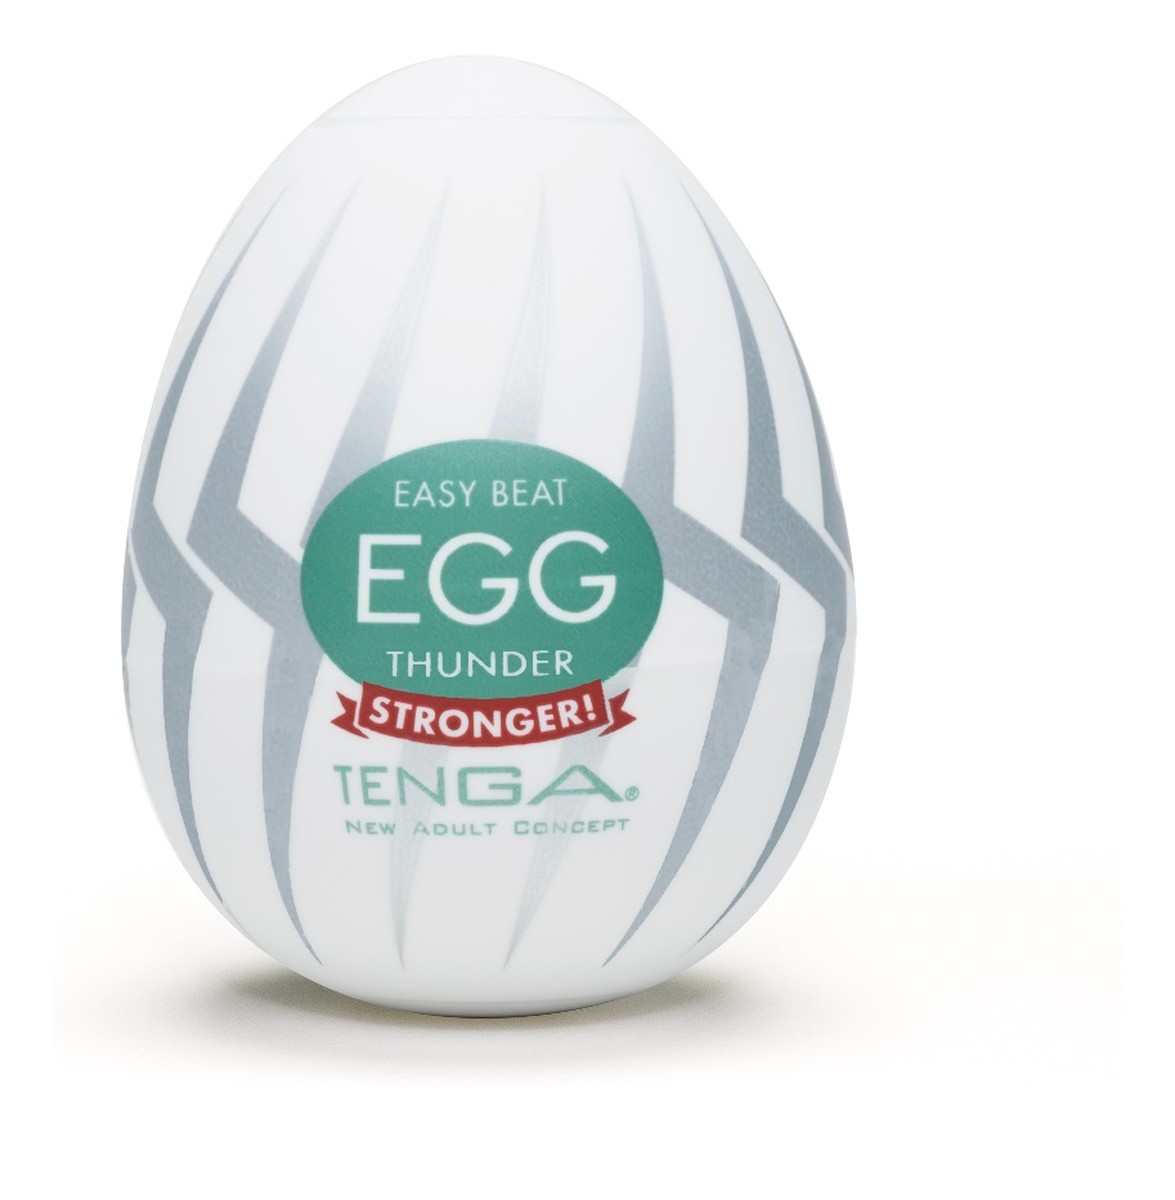 Easy beat egg thunder jednorazowy masturbator w kształcie jajka